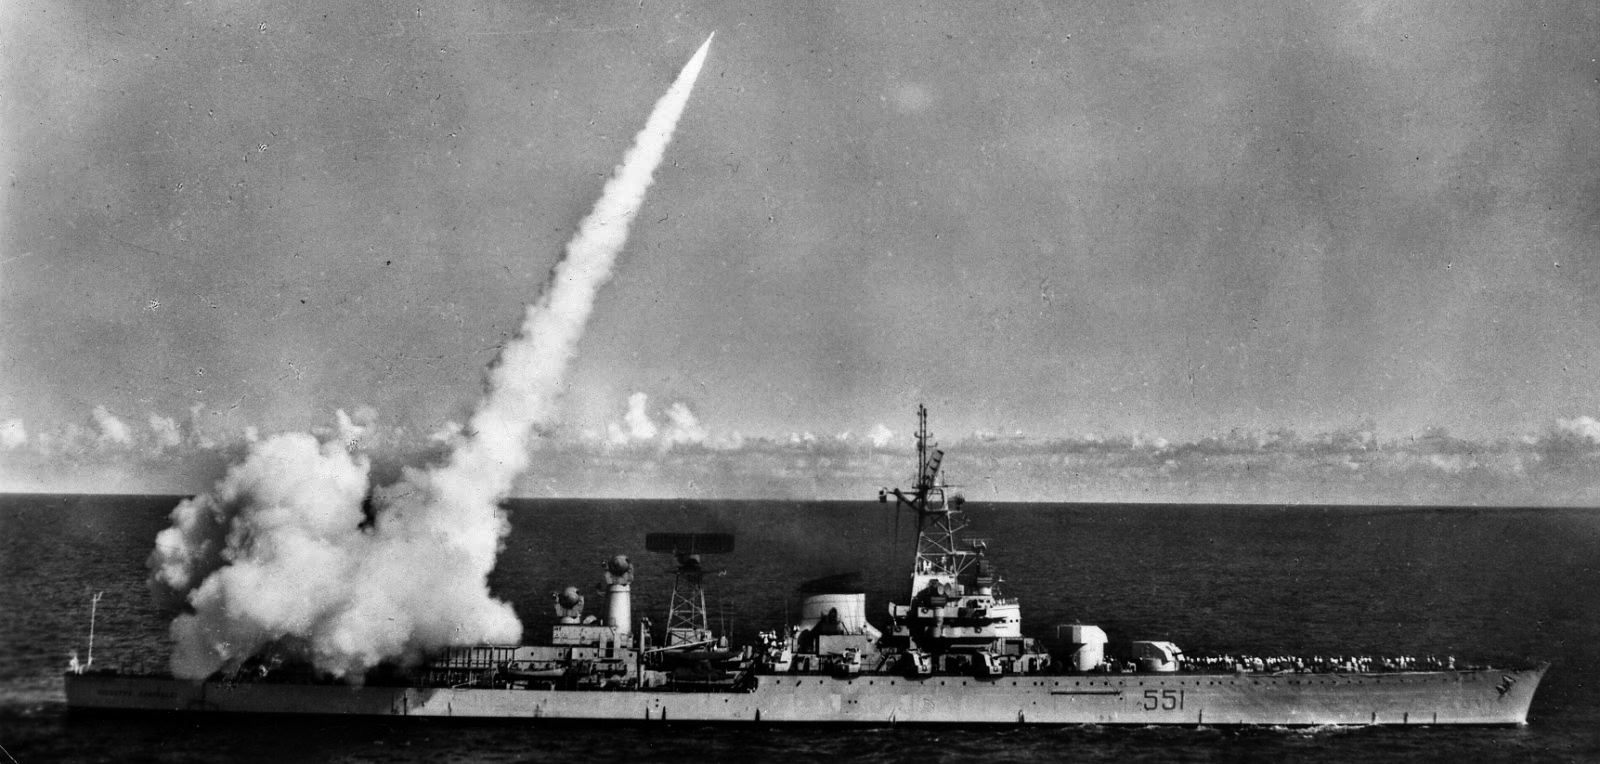 Garibaldi firing her Terrier missile